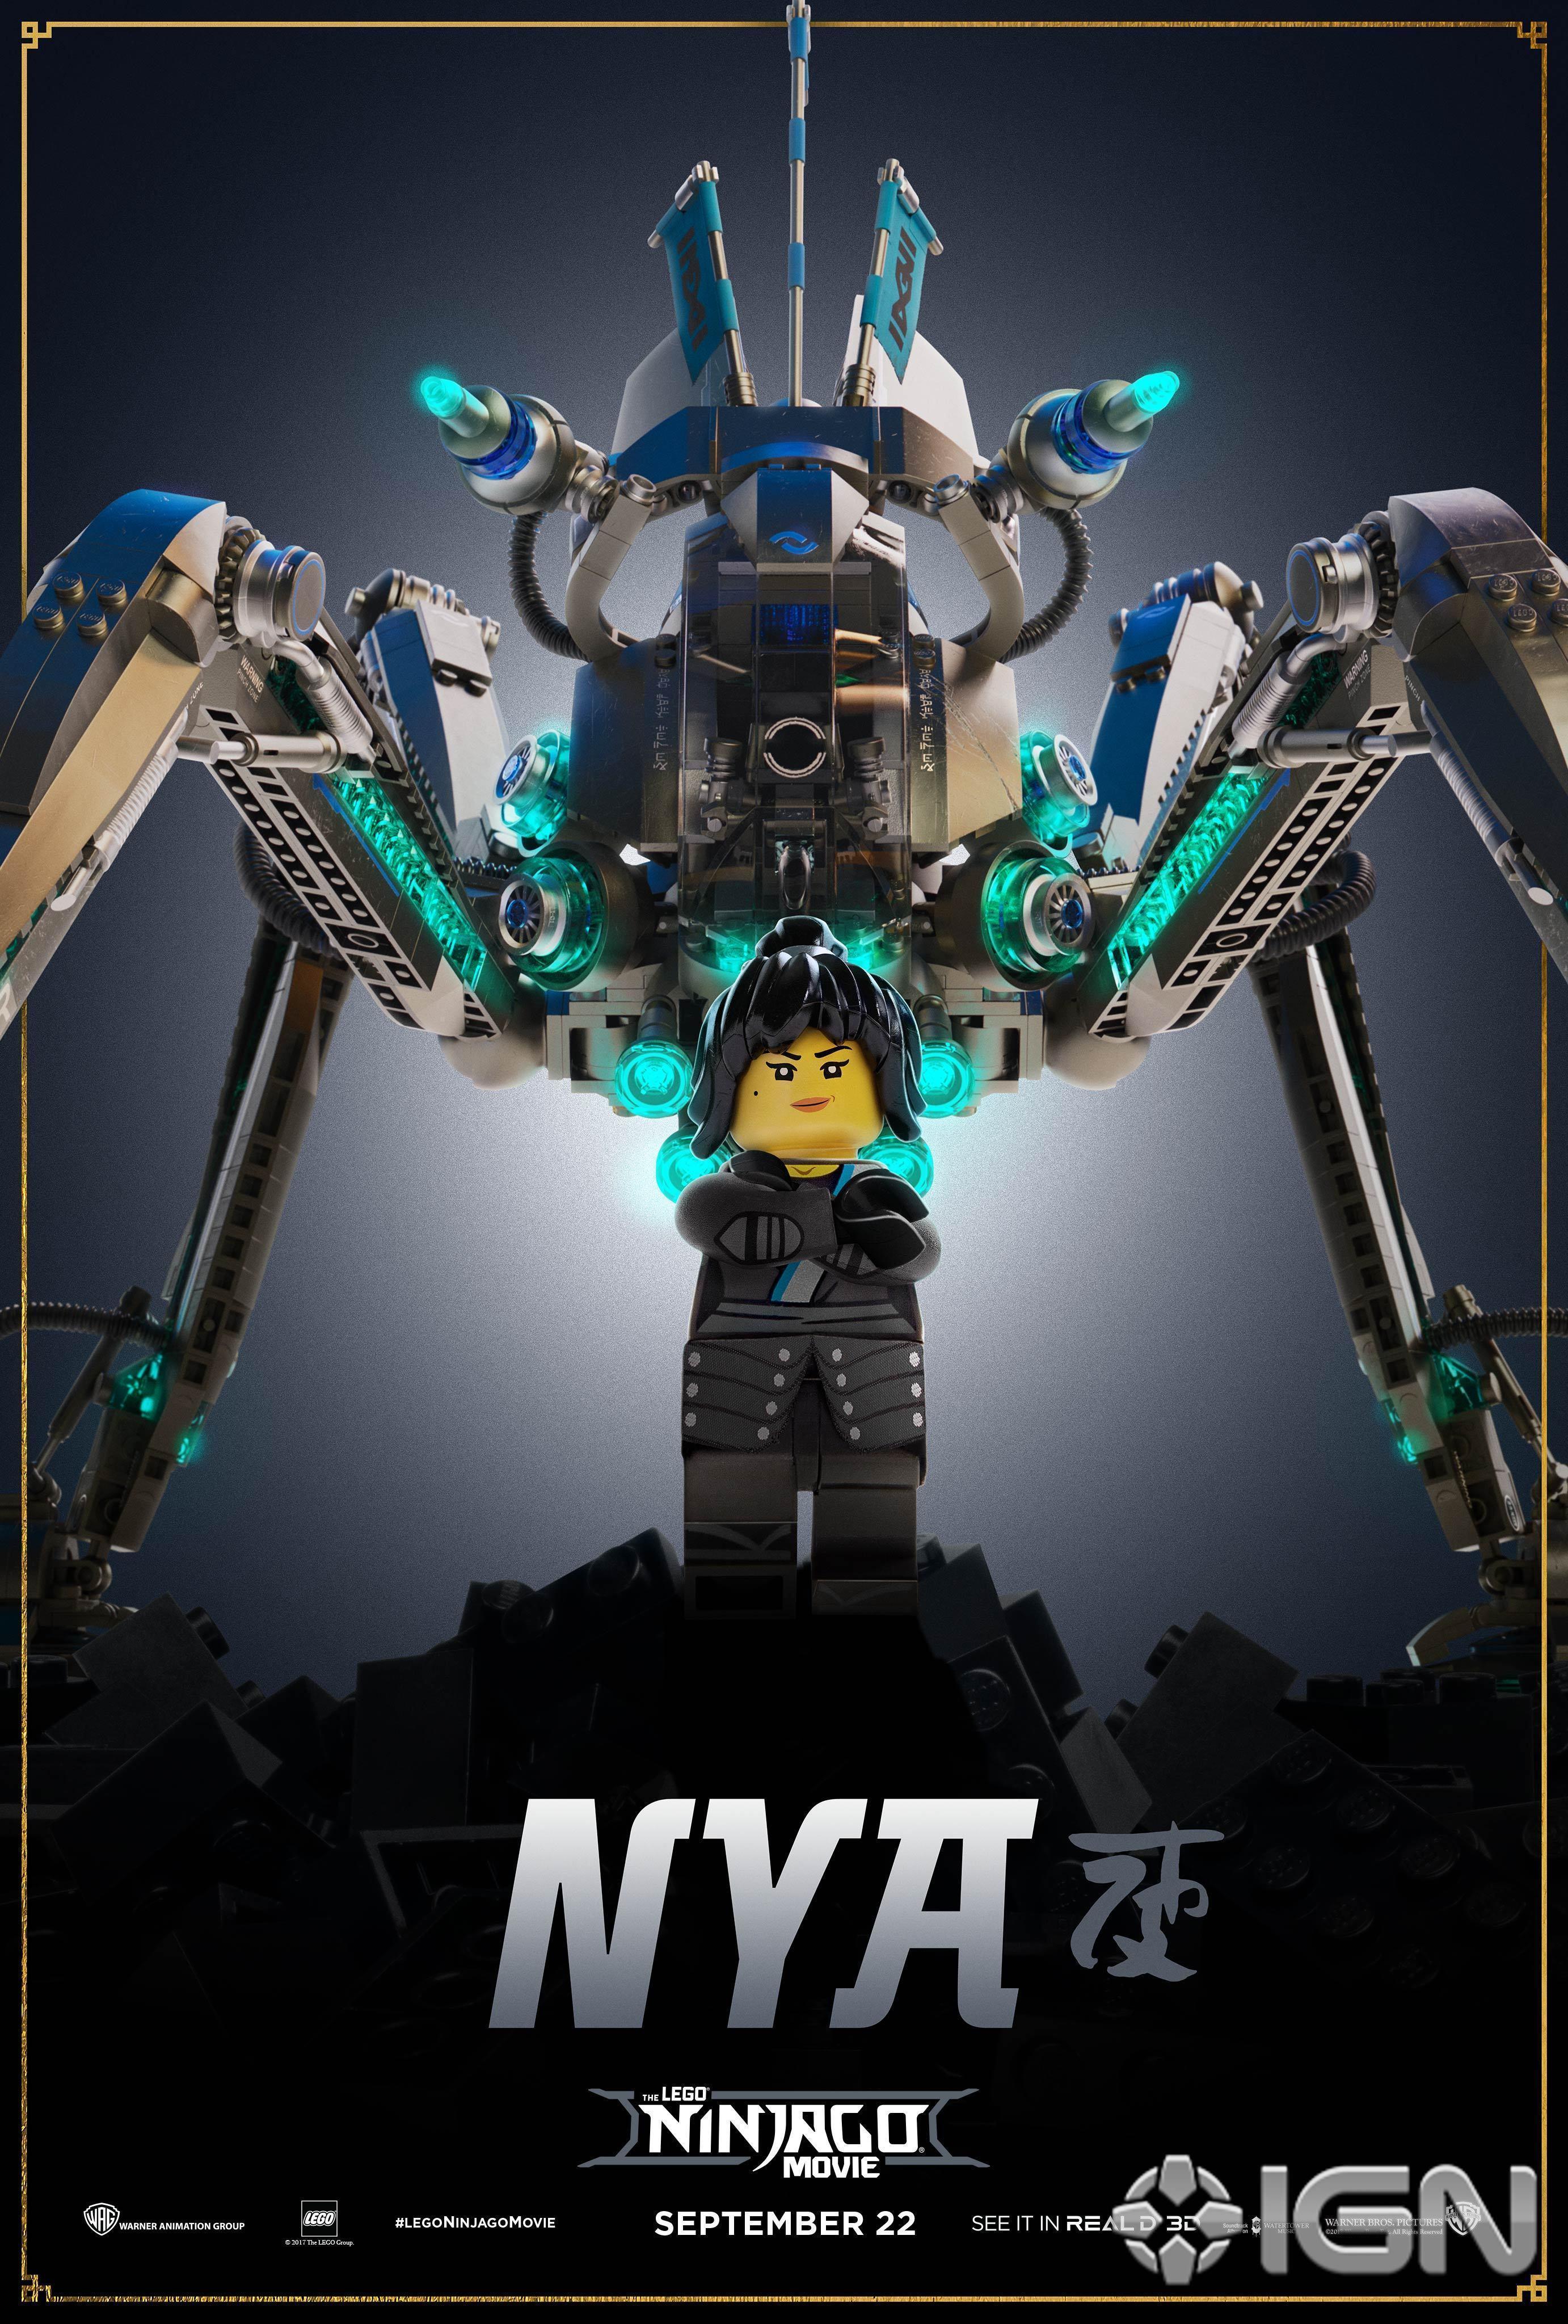 Zane Kai - The Lego Ninjago Movie Wallpapers